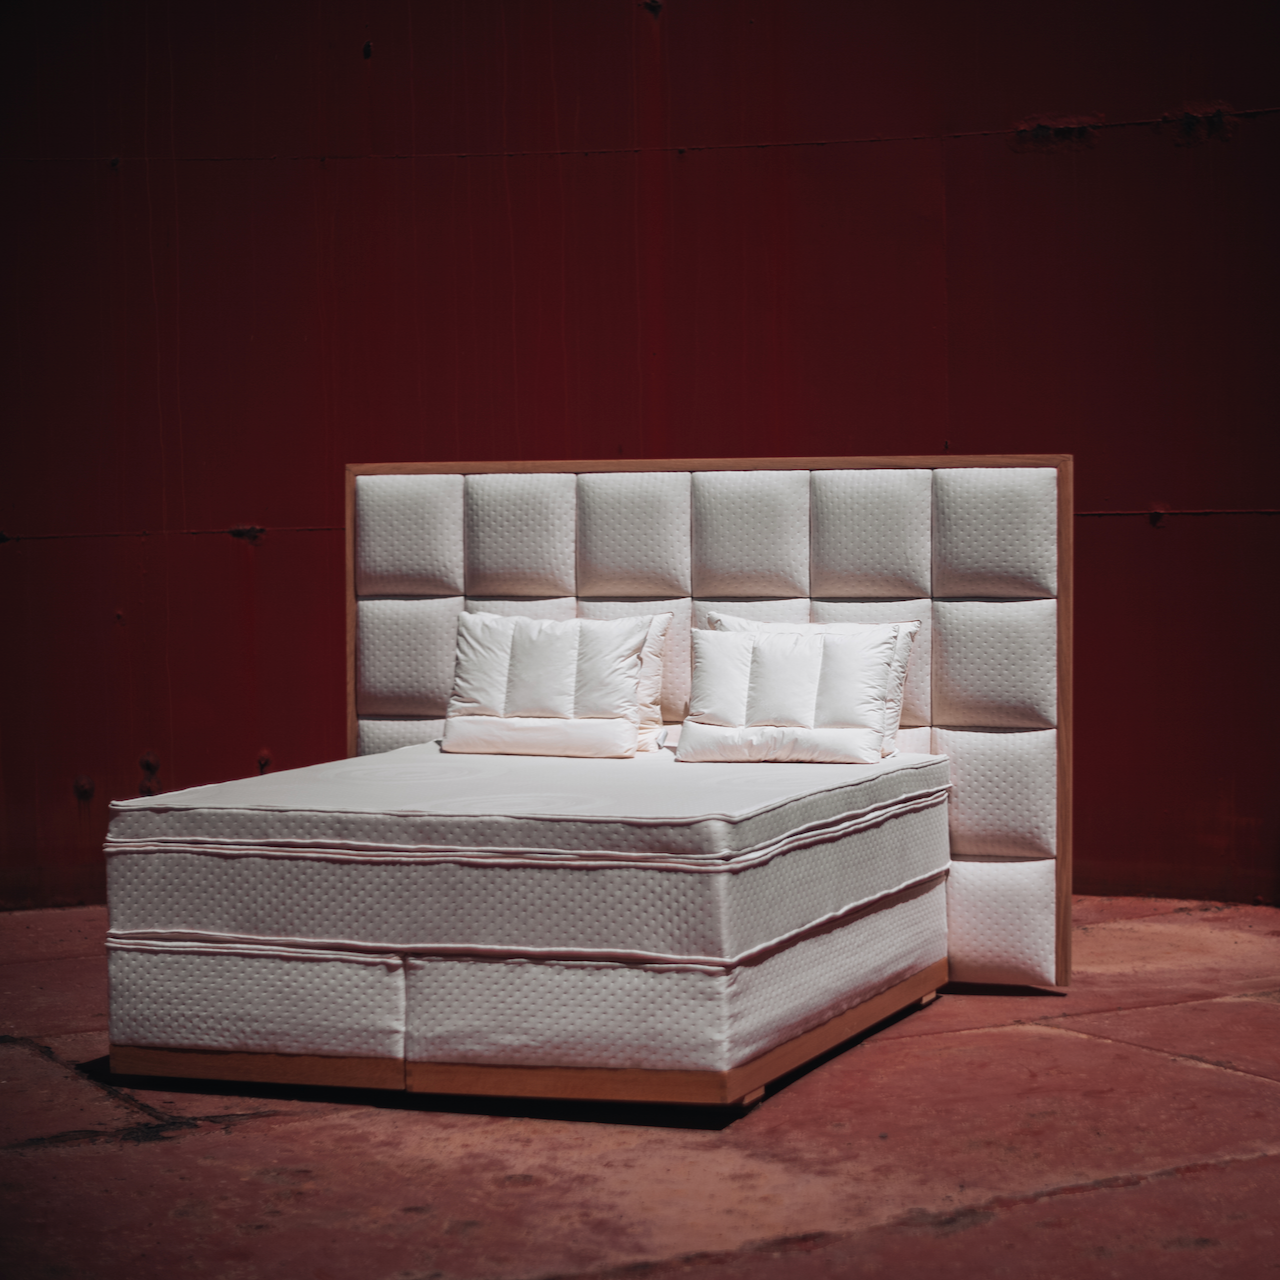 Vår mest eksklusive seng. Den består av totalt 29 lag naturmaterialer. Triton skal gi deg den absolutt høyeste komfort og har vakre detaljer. Hver madrass er trukket i et fløyelsmykt trekk av økologisk bomull og du velger fargen som passer ditt soverom.